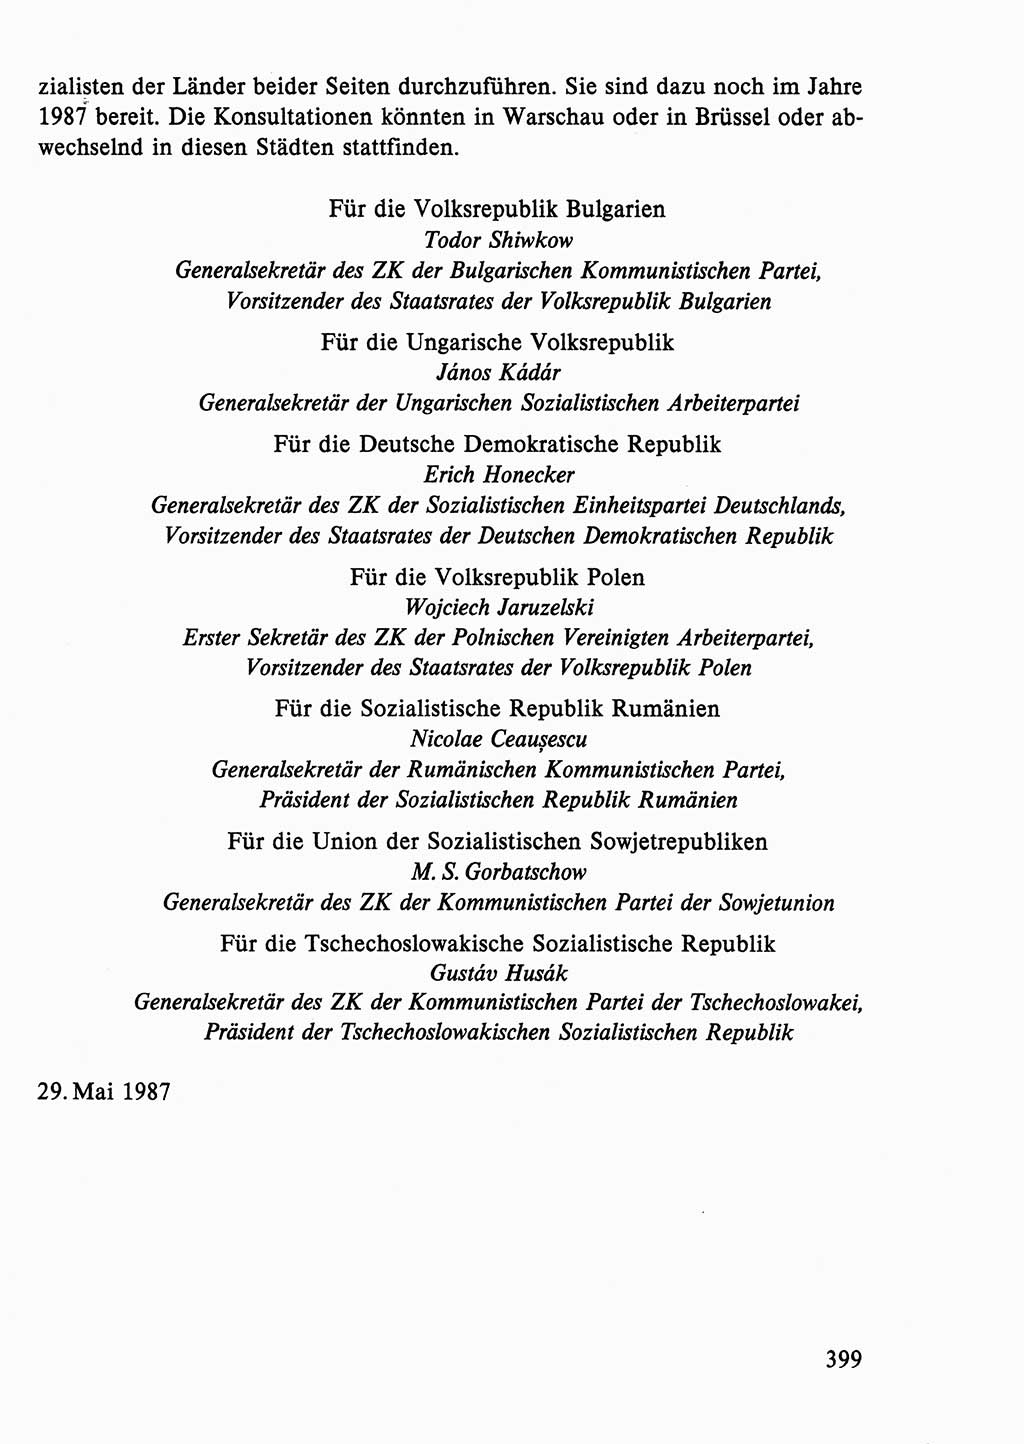 Dokumente der Sozialistischen Einheitspartei Deutschlands (SED) [Deutsche Demokratische Republik (DDR)] 1986-1987, Seite 399 (Dok. SED DDR 1986-1987, S. 399)